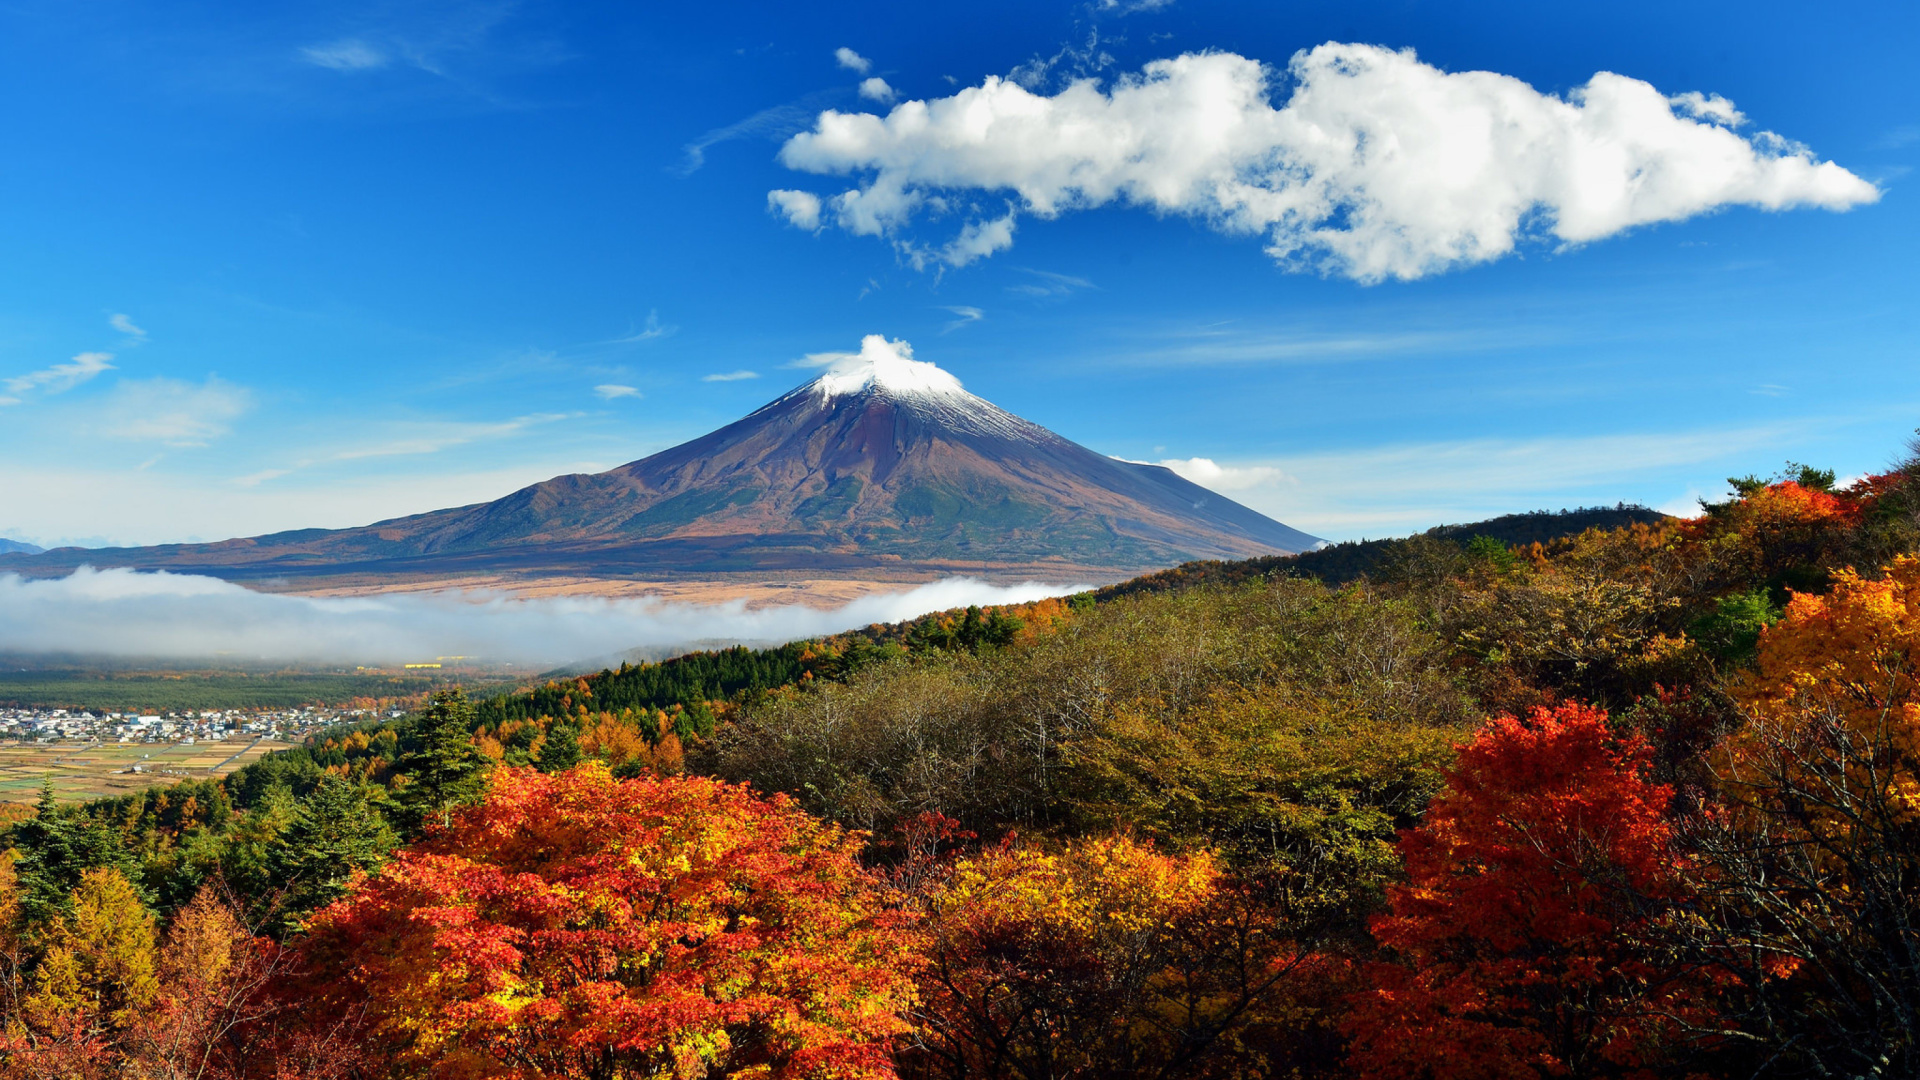 Mount Fuji 3776 Meters screenshot #1 1920x1080